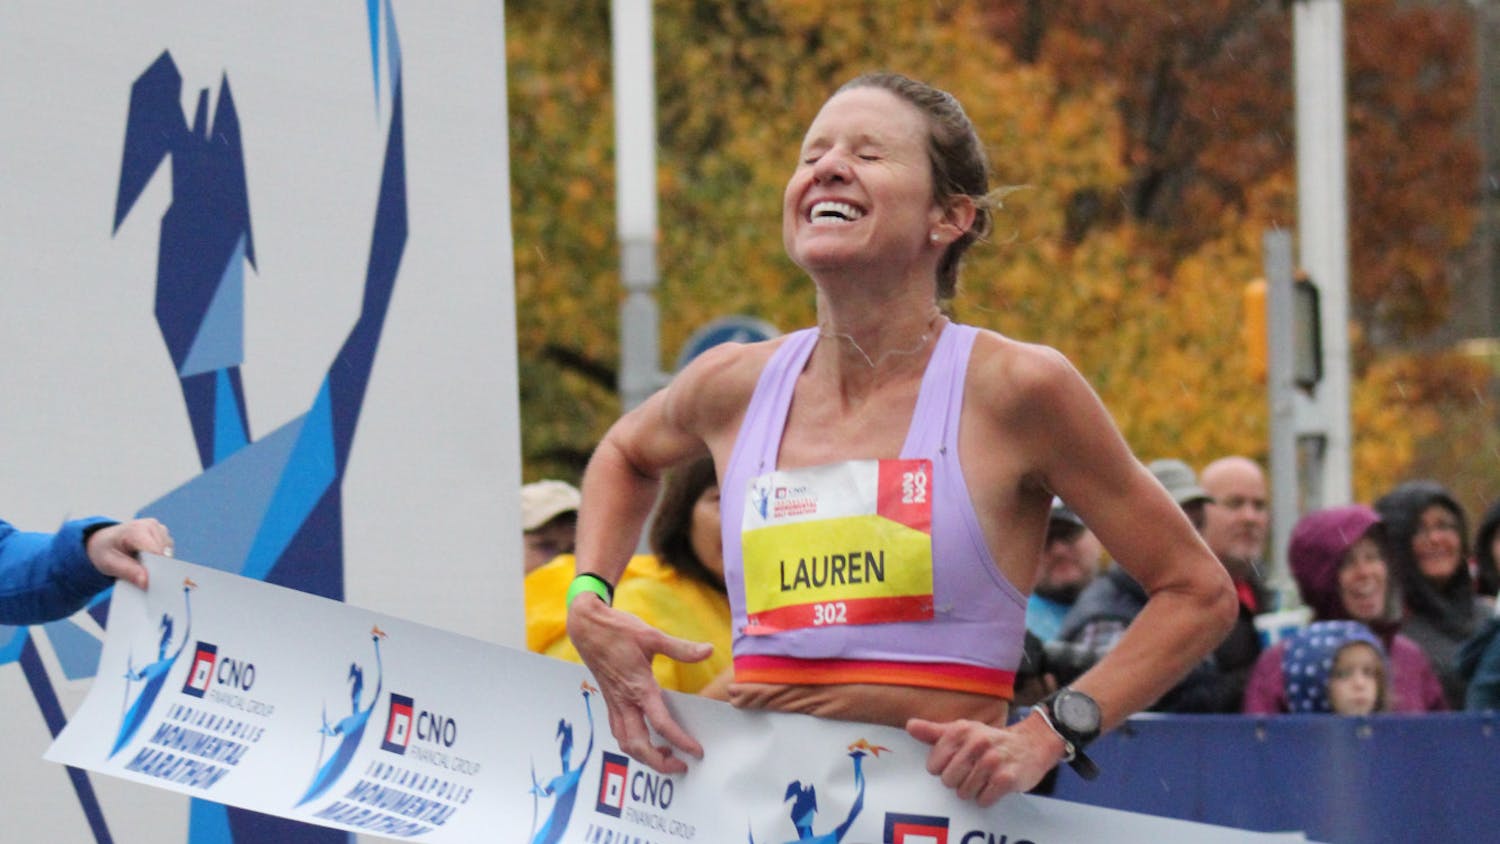 Lauren Hurley Beats Race Record